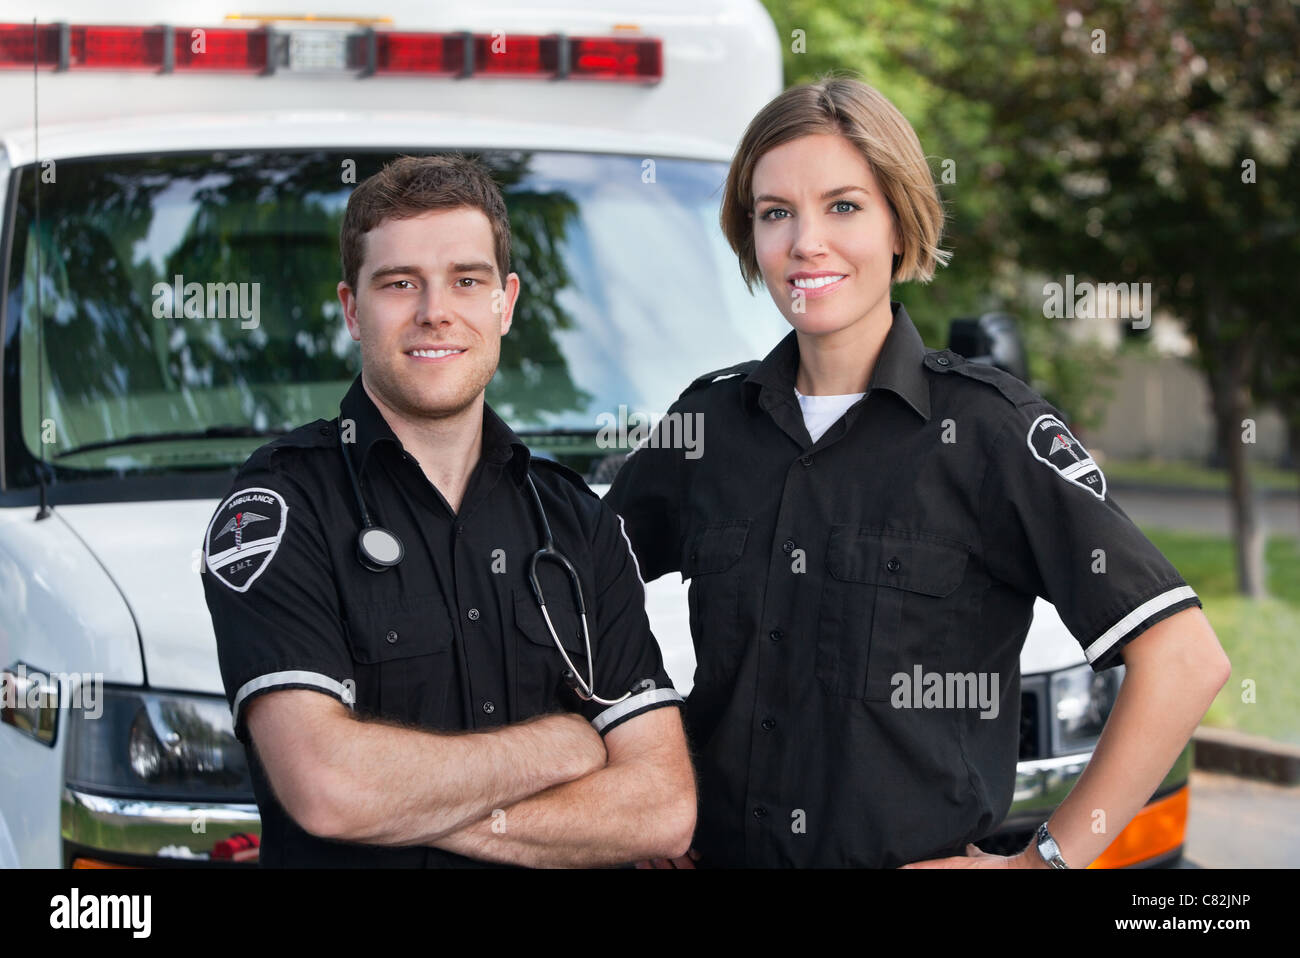 Portrait de l'équipe paramédicale standing in front of ambulance Banque D'Images